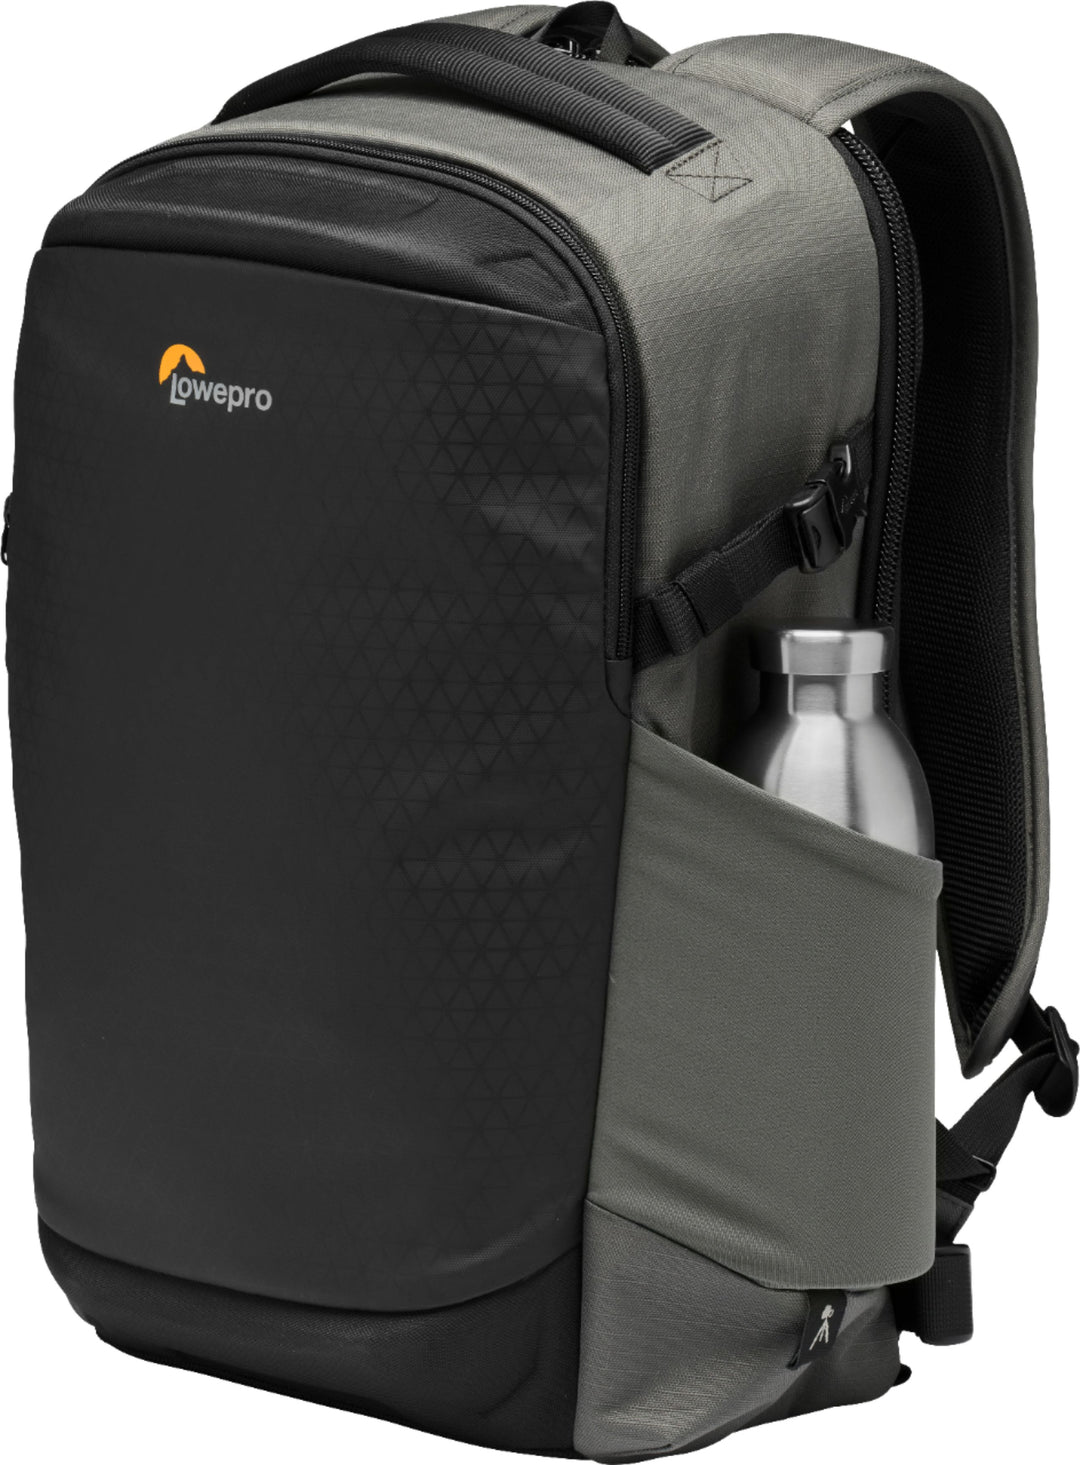 Lowepro - Flipside BP 300 AW III Backpack - Charcoal_10